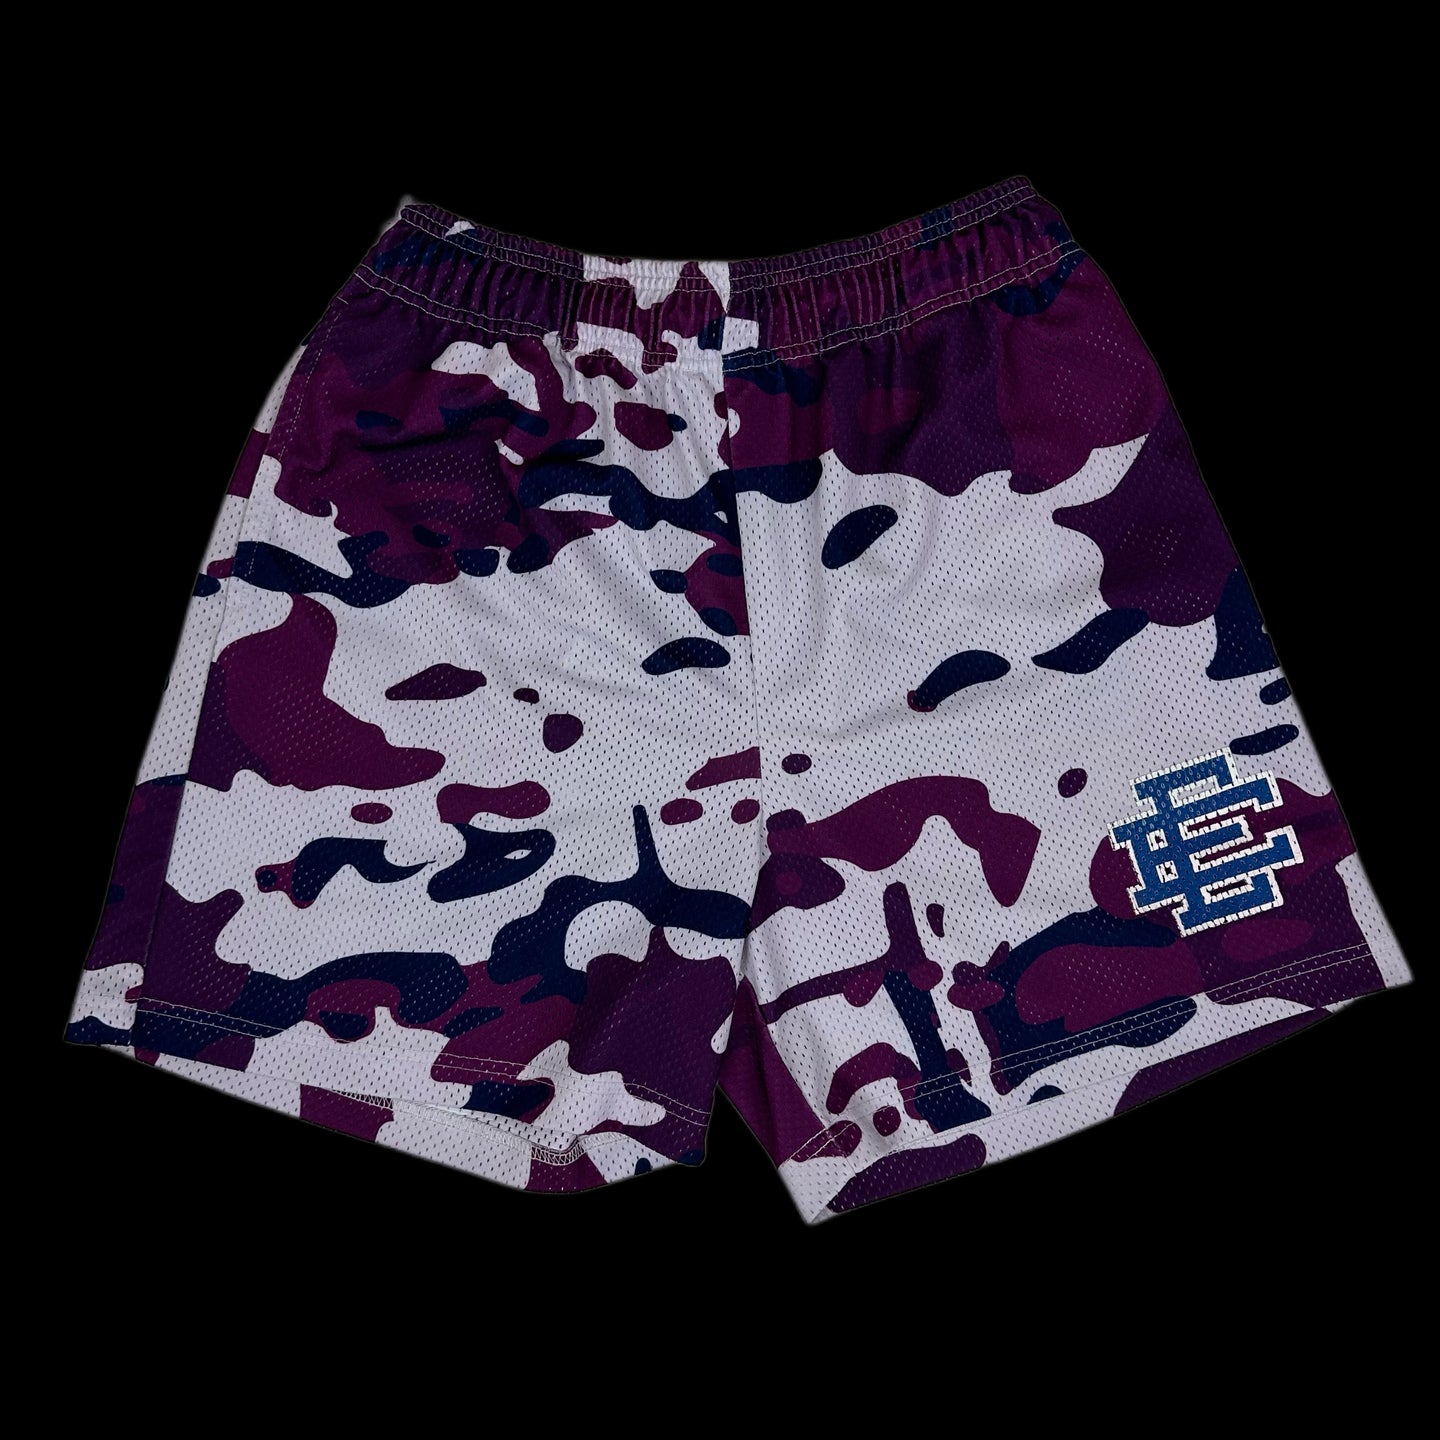 eric emanuel purple camo mesh shorts – change clothes